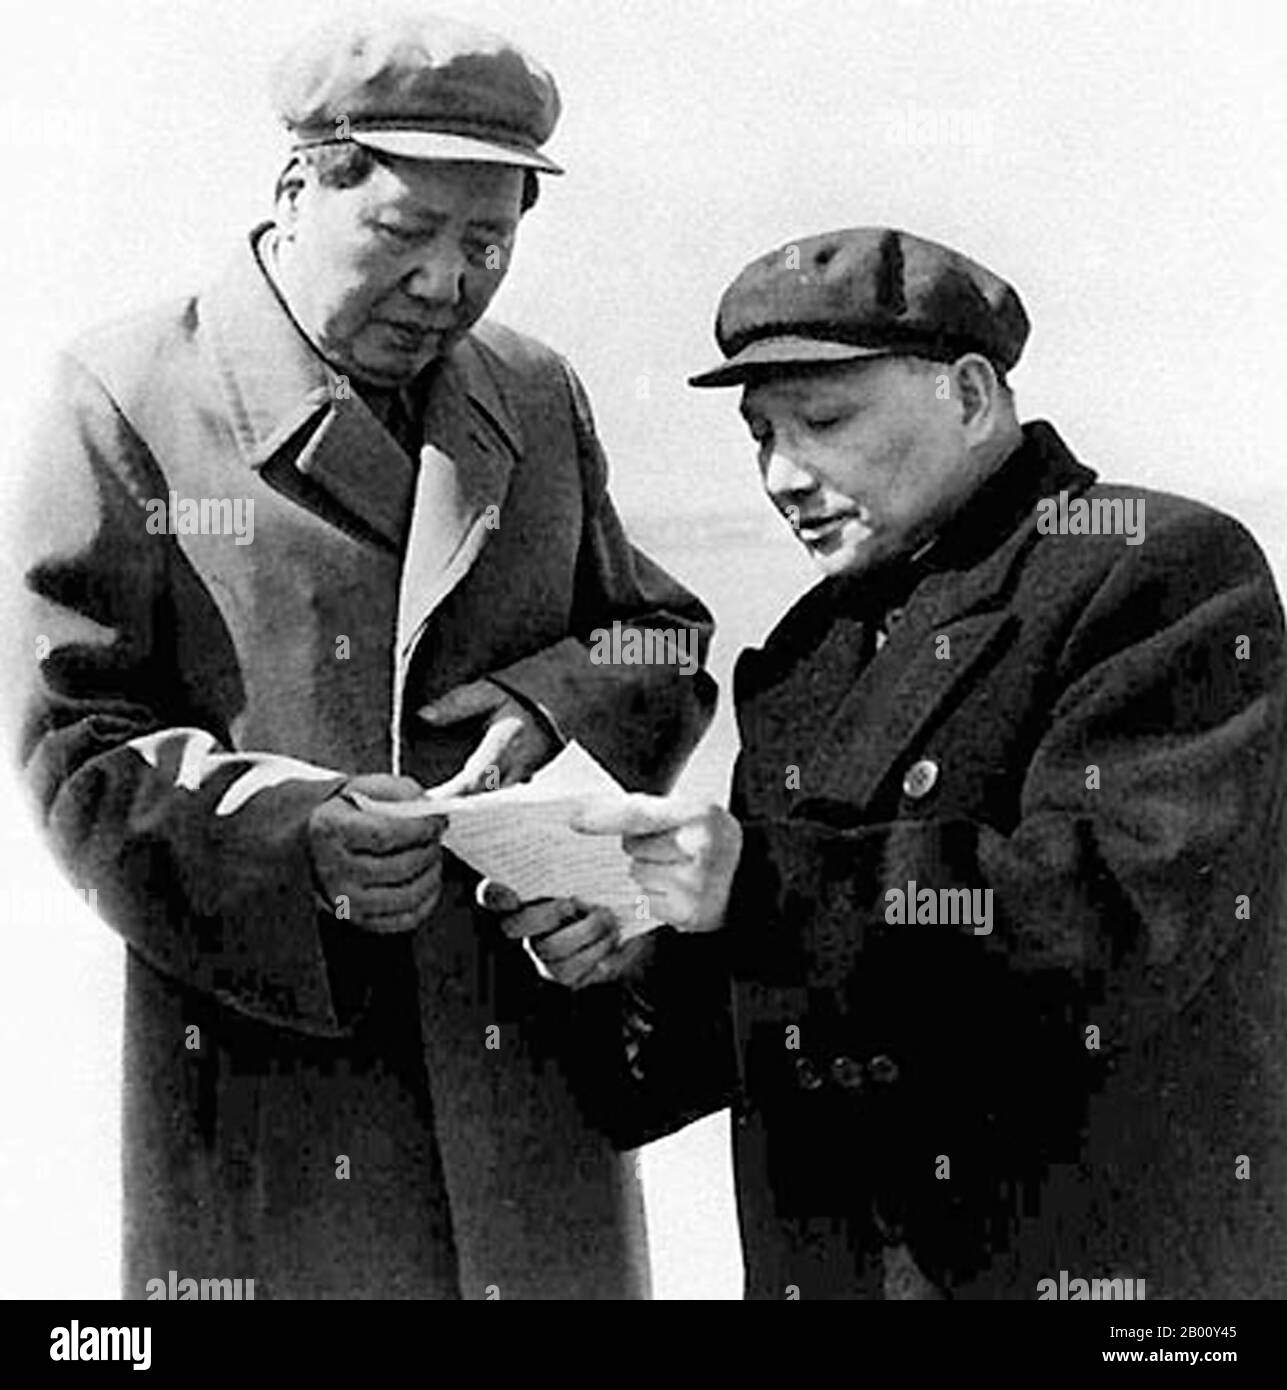 China: Mao Zedong und Deng Xiaoping, Peking, 1959. Mao Zedong, auch als Mao Tse-tung (26. Dezember 1893 – 9. September 1976) transliteriert, war ein chinesischer kommunistischer Revolutionär, Guerilla-Kriegsstratege, Autor, politischer Theoretiker und Führer der chinesischen Revolution. Allgemein als Vorsitzender Mao bezeichnet, war er der Architekt der Volksrepublik China (PRC) seit ihrer Gründung im Jahr 1949 und hielt bis zu seinem Tod im Jahr 1976 die autoritäre Kontrolle über die Nation. Sein theoretischer Beitrag zum Marxismus-Leninismus, einschließlich militärischer Strategien, wird kollektiv als Maoismus bezeichnet. Stockfoto